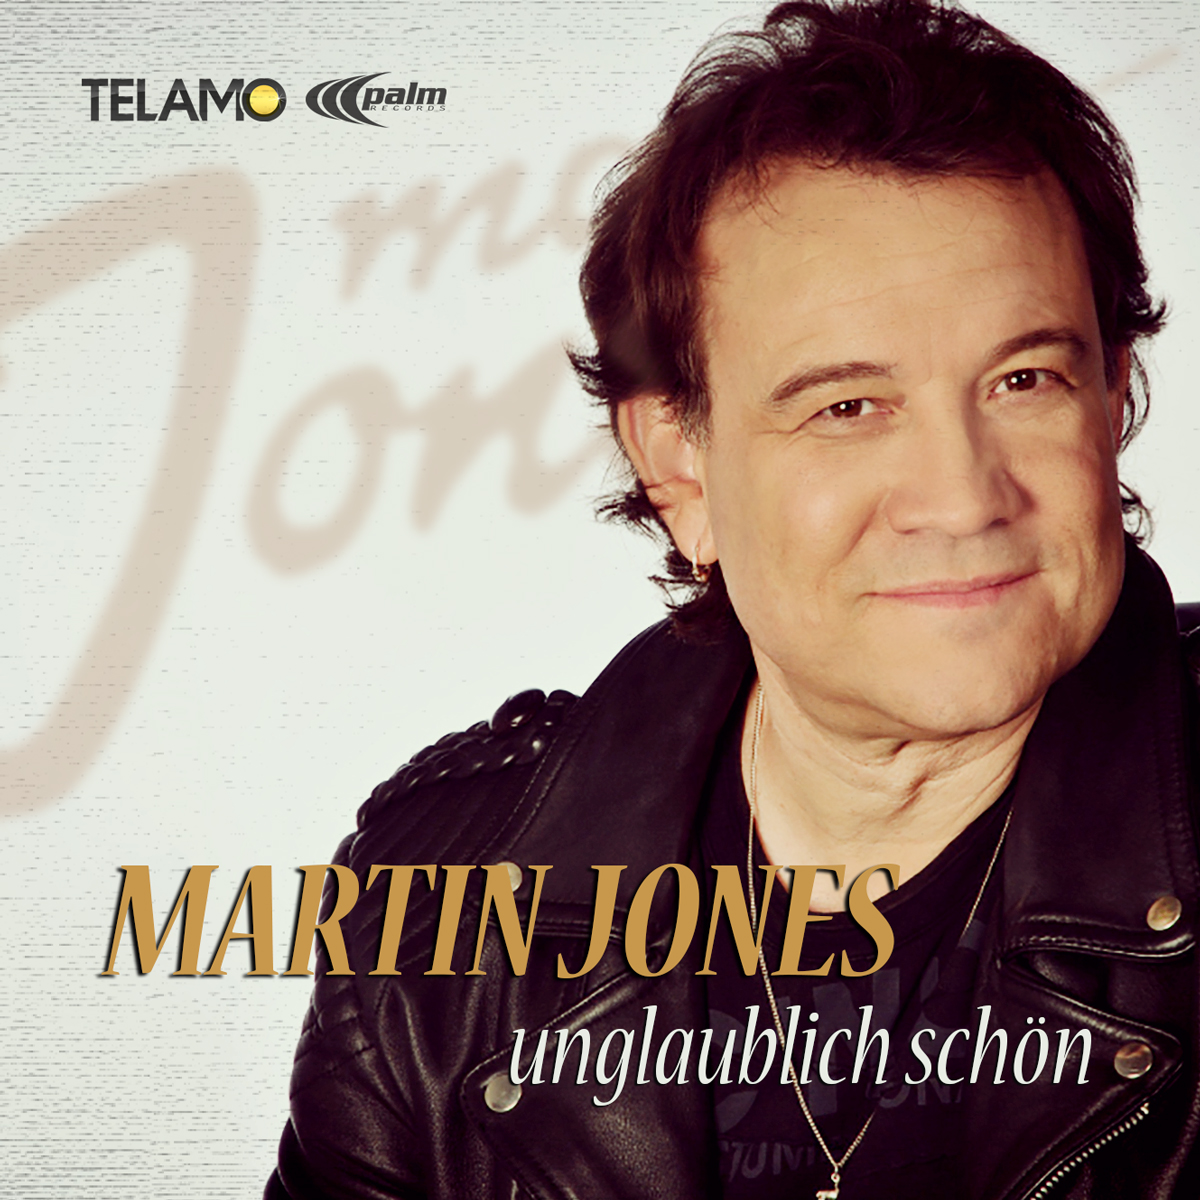 <b>Martin Jones</b> “Unglaublich schön” die neue Single – VÖ: 03.04.2015 - MartinJones_Unglaublichschoen